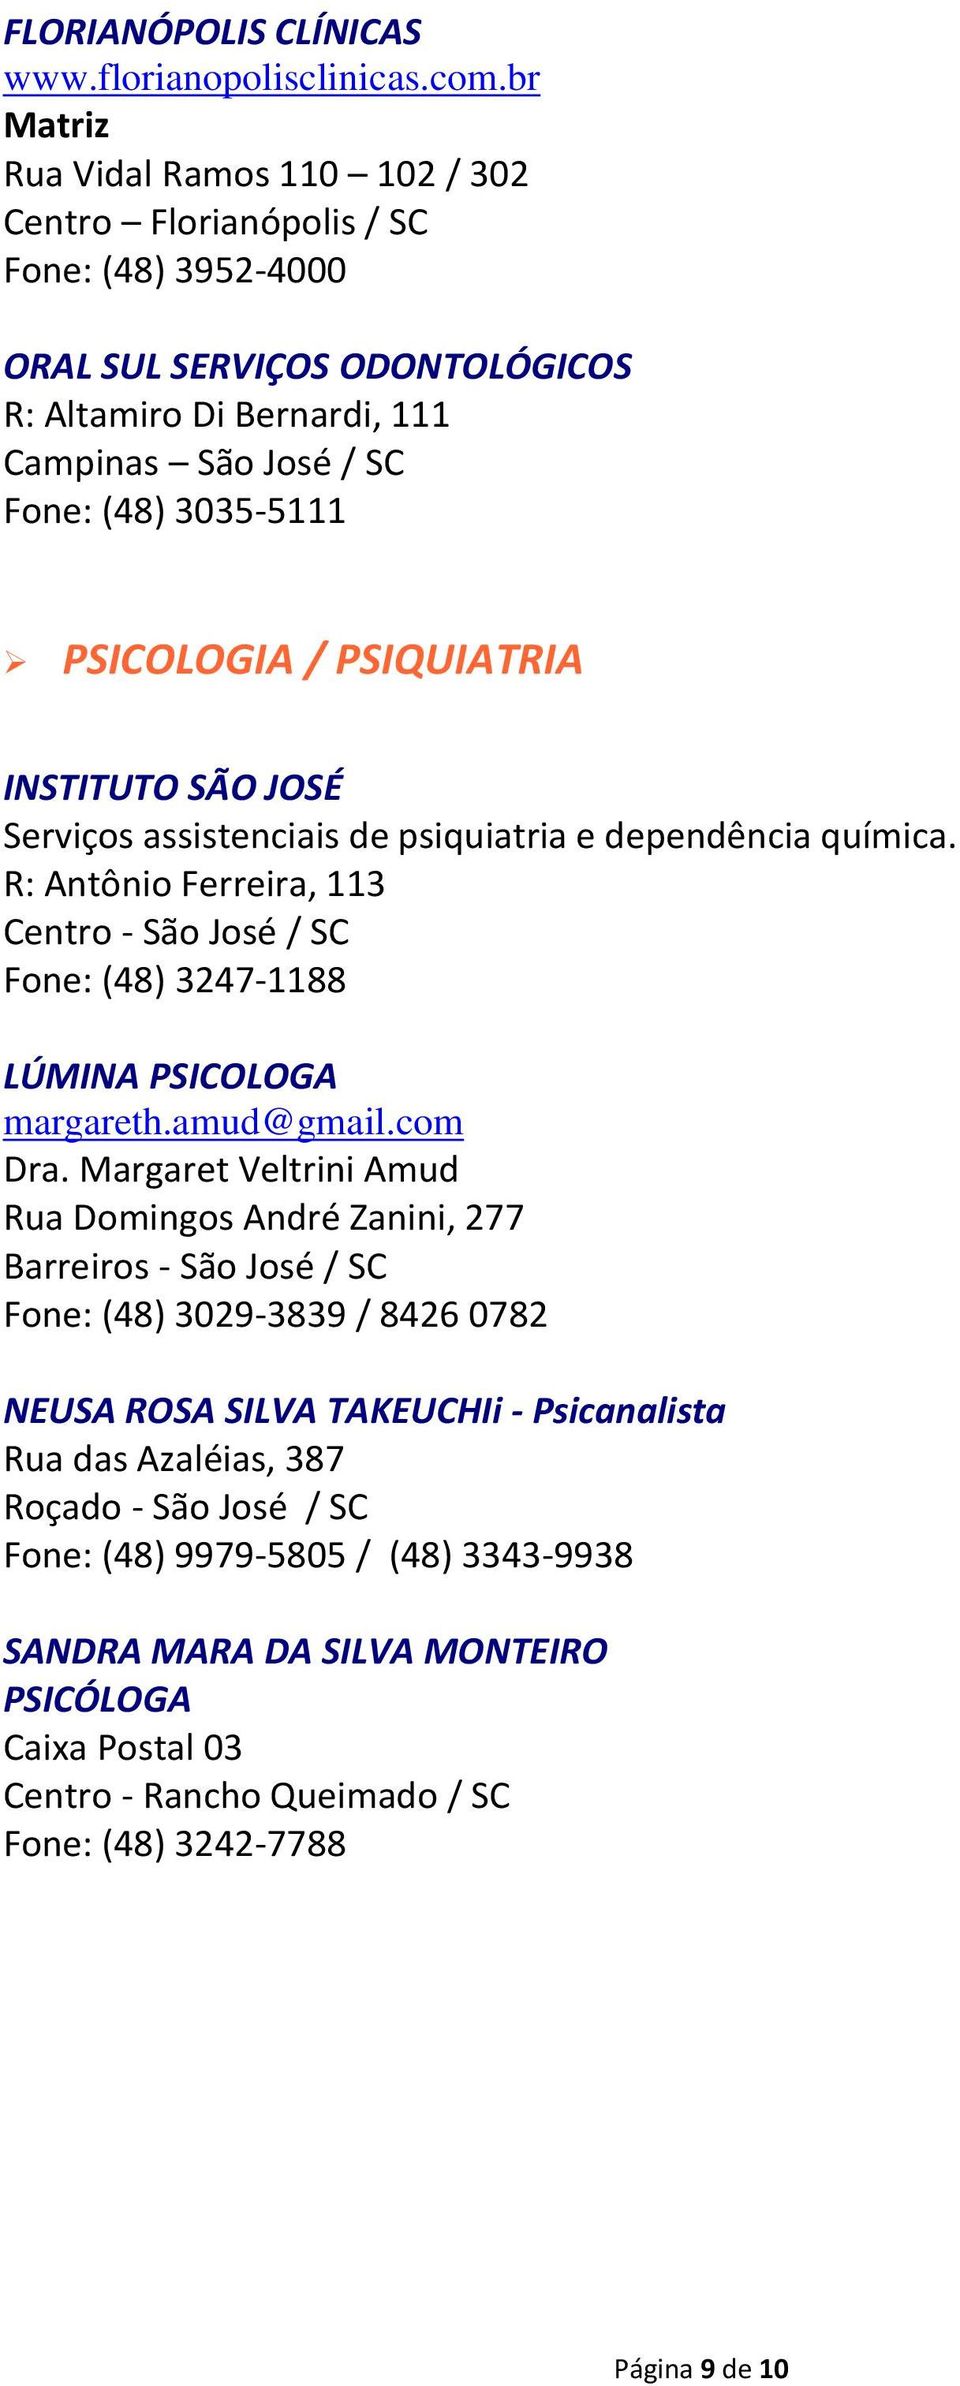 INSTITUTO SÃO JOSÉ Serviços assistenciais de psiquiatria e dependência química. R: Antônio Ferreira, 113 Centro - São José / SC Fone: (48) 3247-1188 LÚMINA PSICOLOGA margareth.amud@gmail.com Dra.